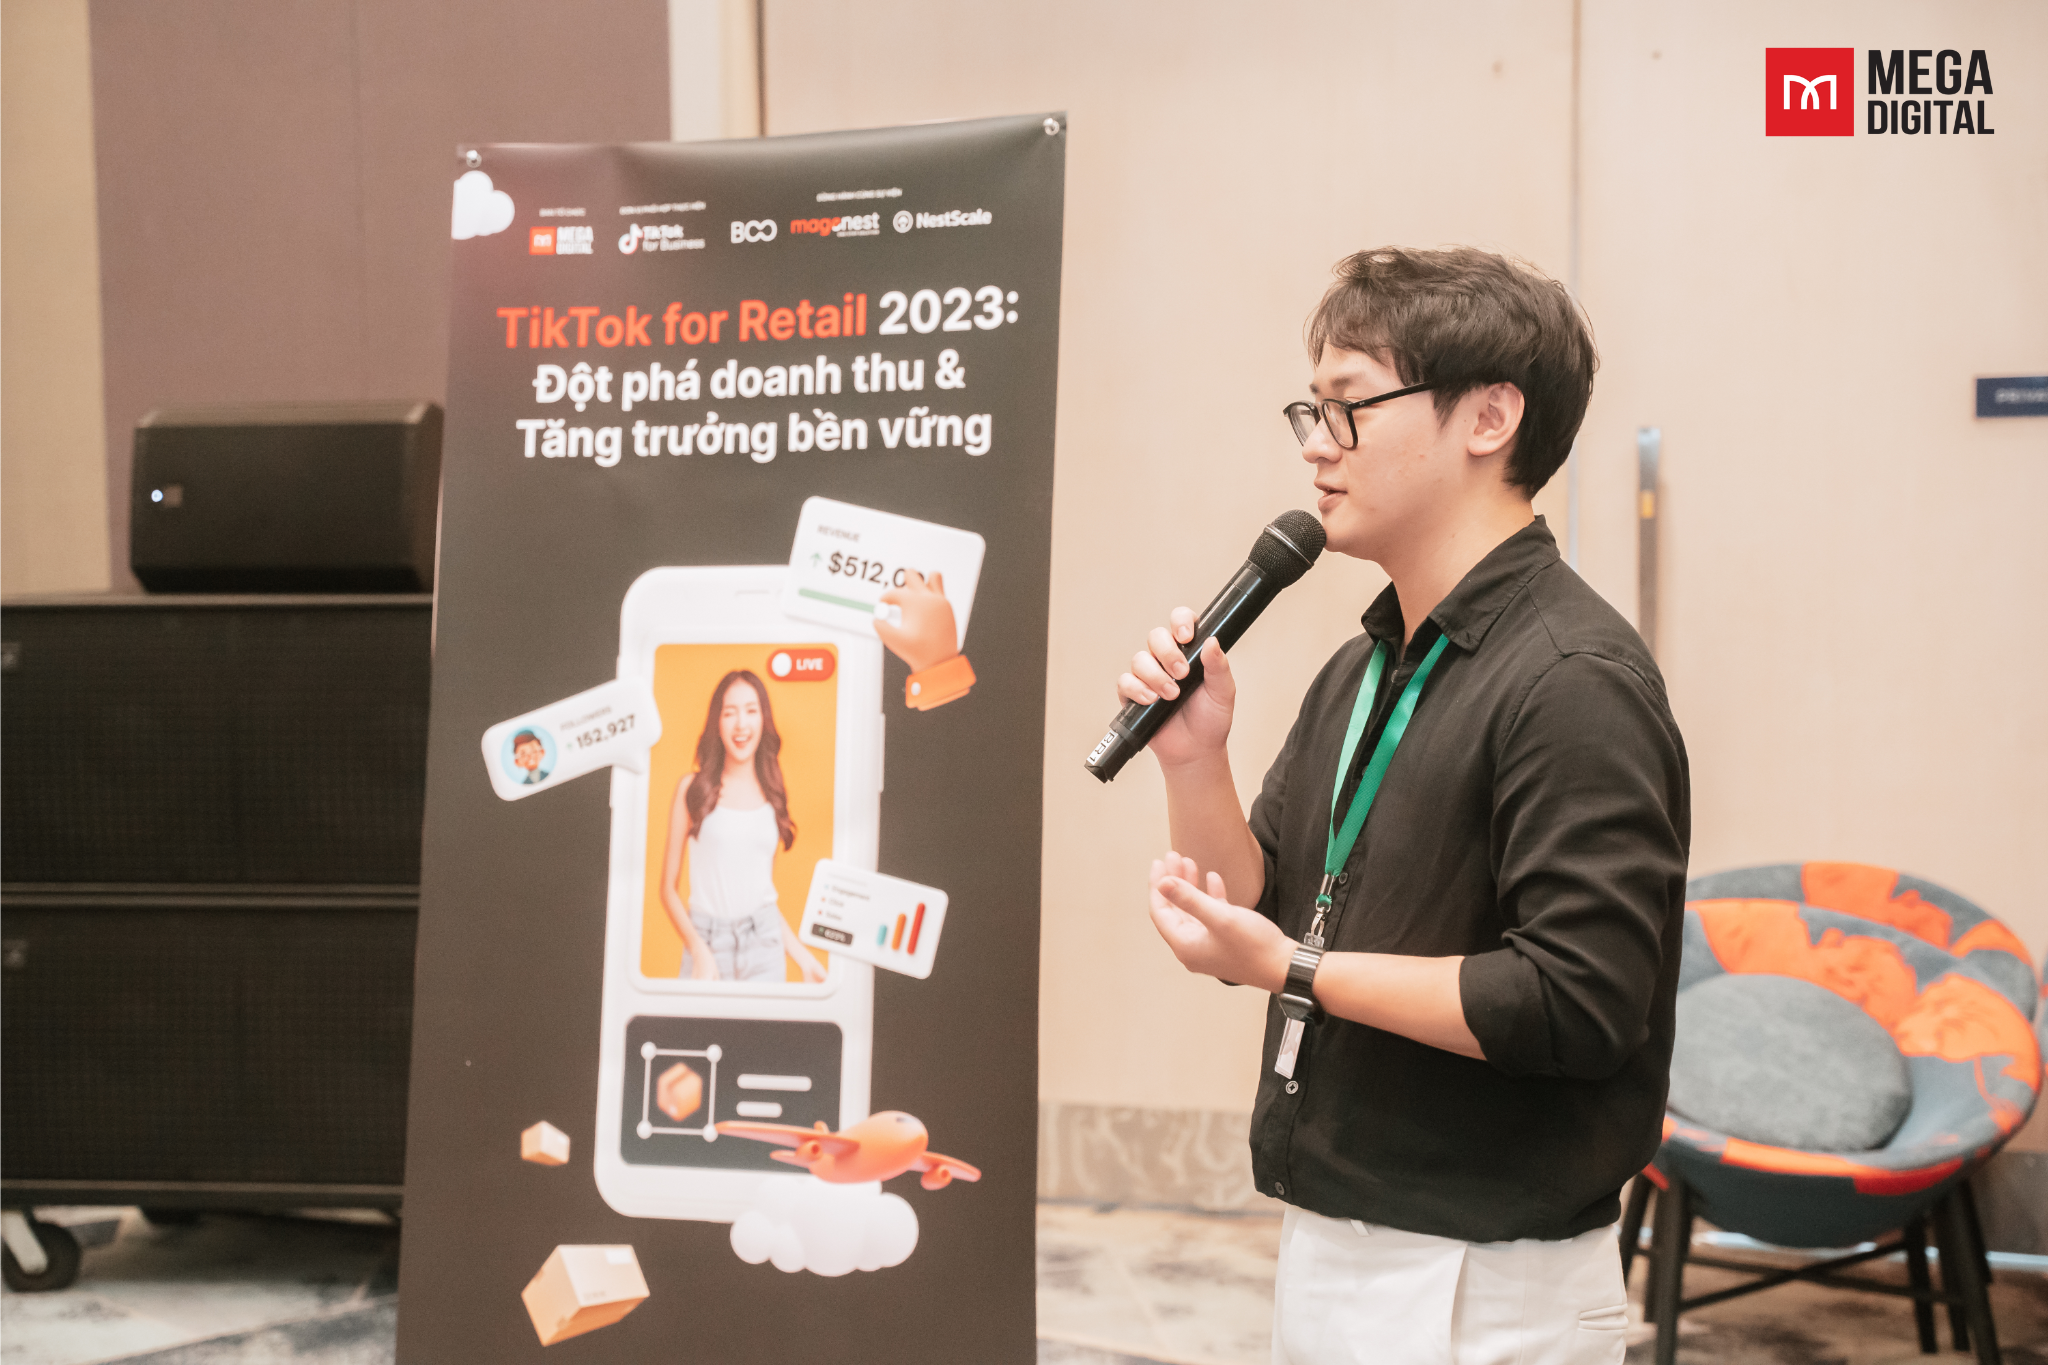 Anh Nguyễn Hoàng Lâm (BD Mega Digital) tại hội thảo TikTok for Retail 2023